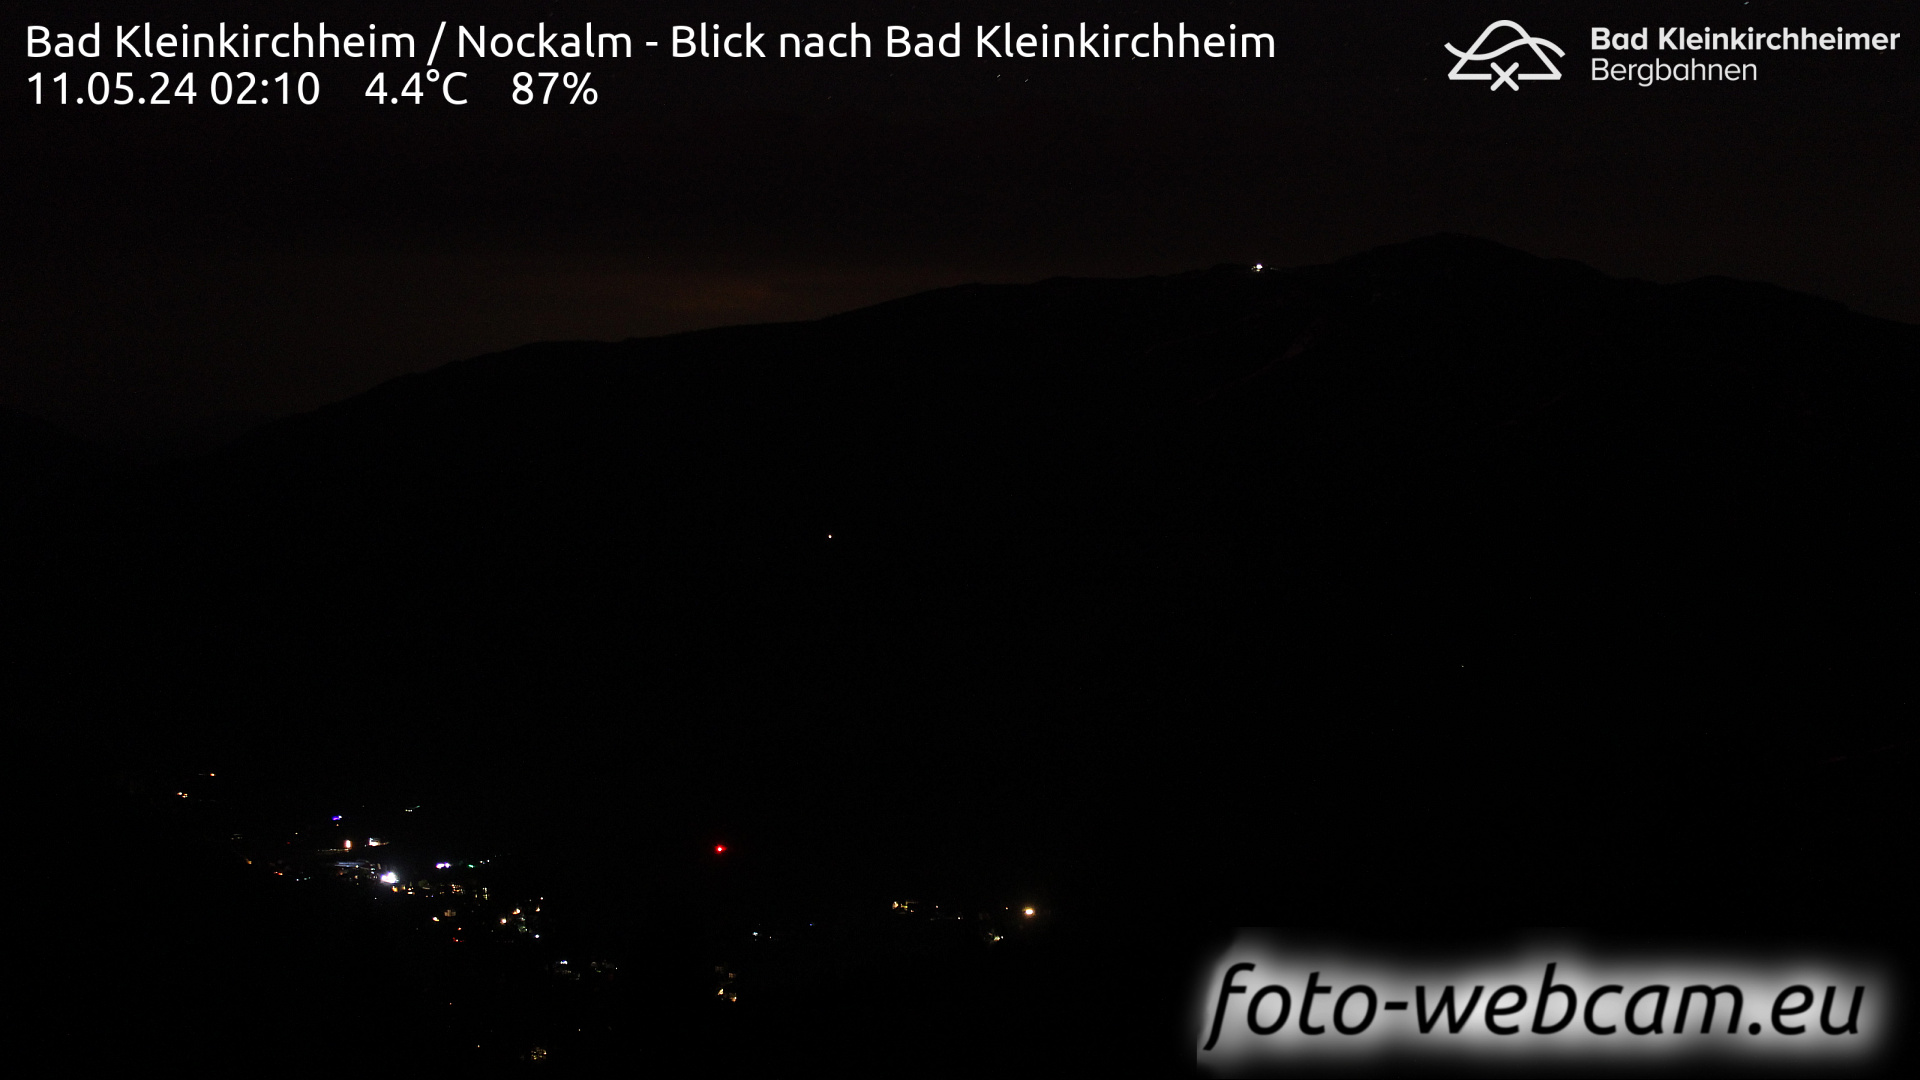 Bad Kleinkirchheim Man. 02:17